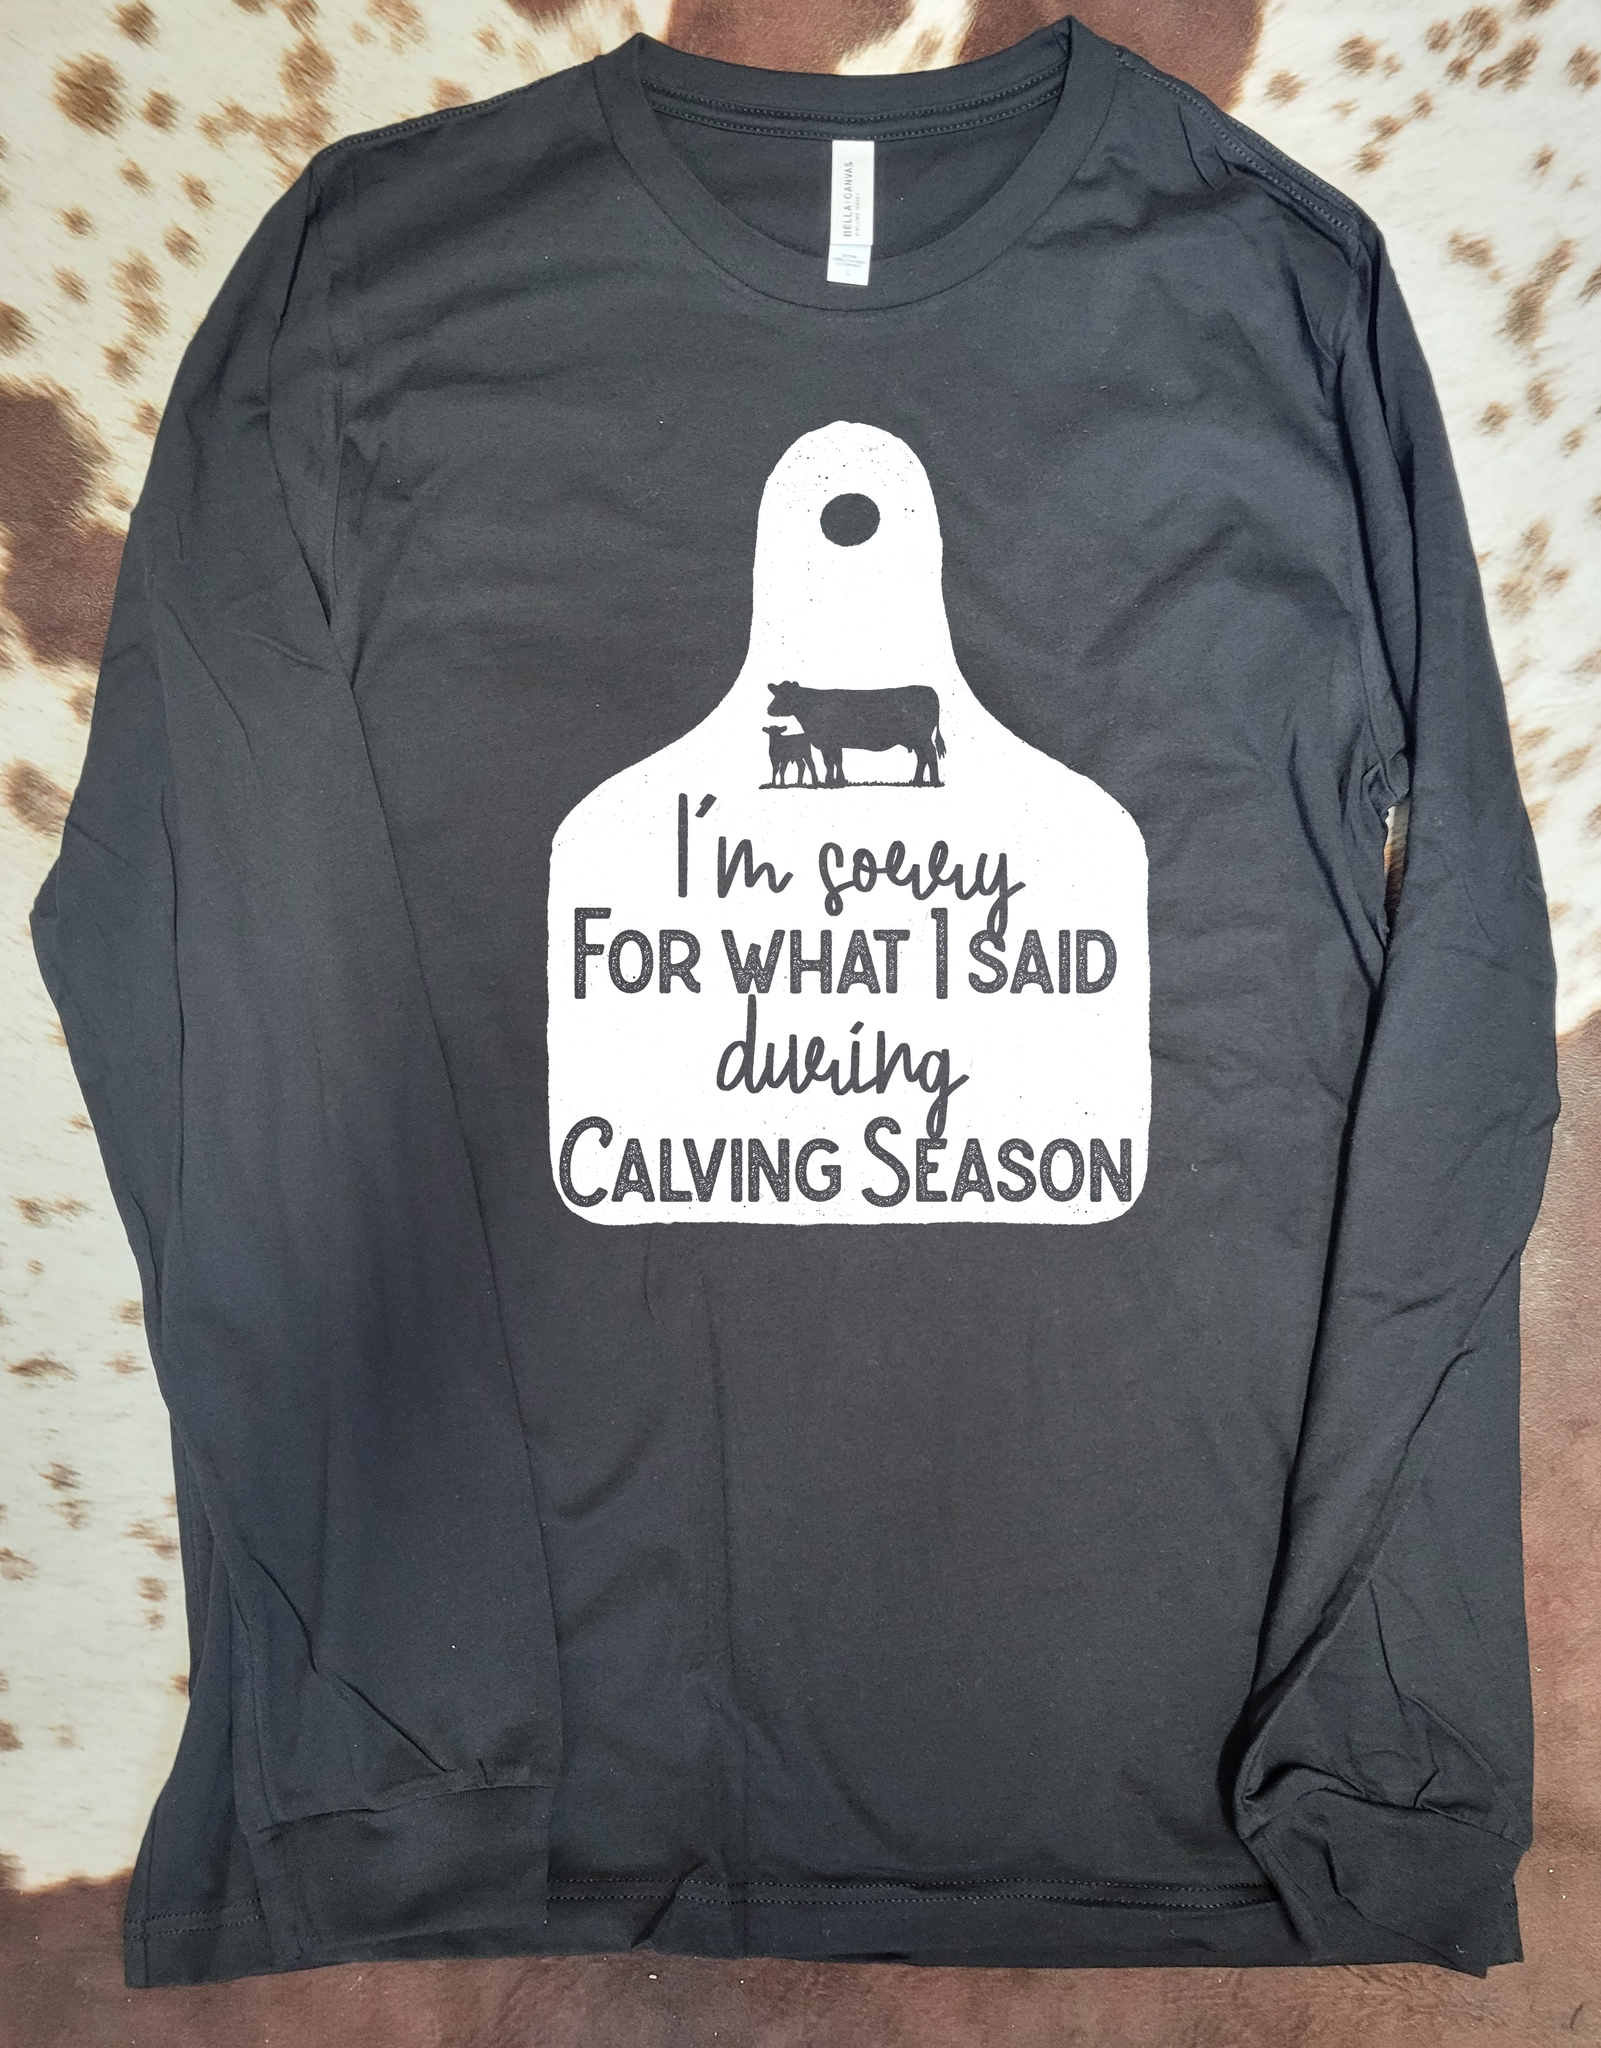 I'm Sorry for what I said during Calving Season Shirt